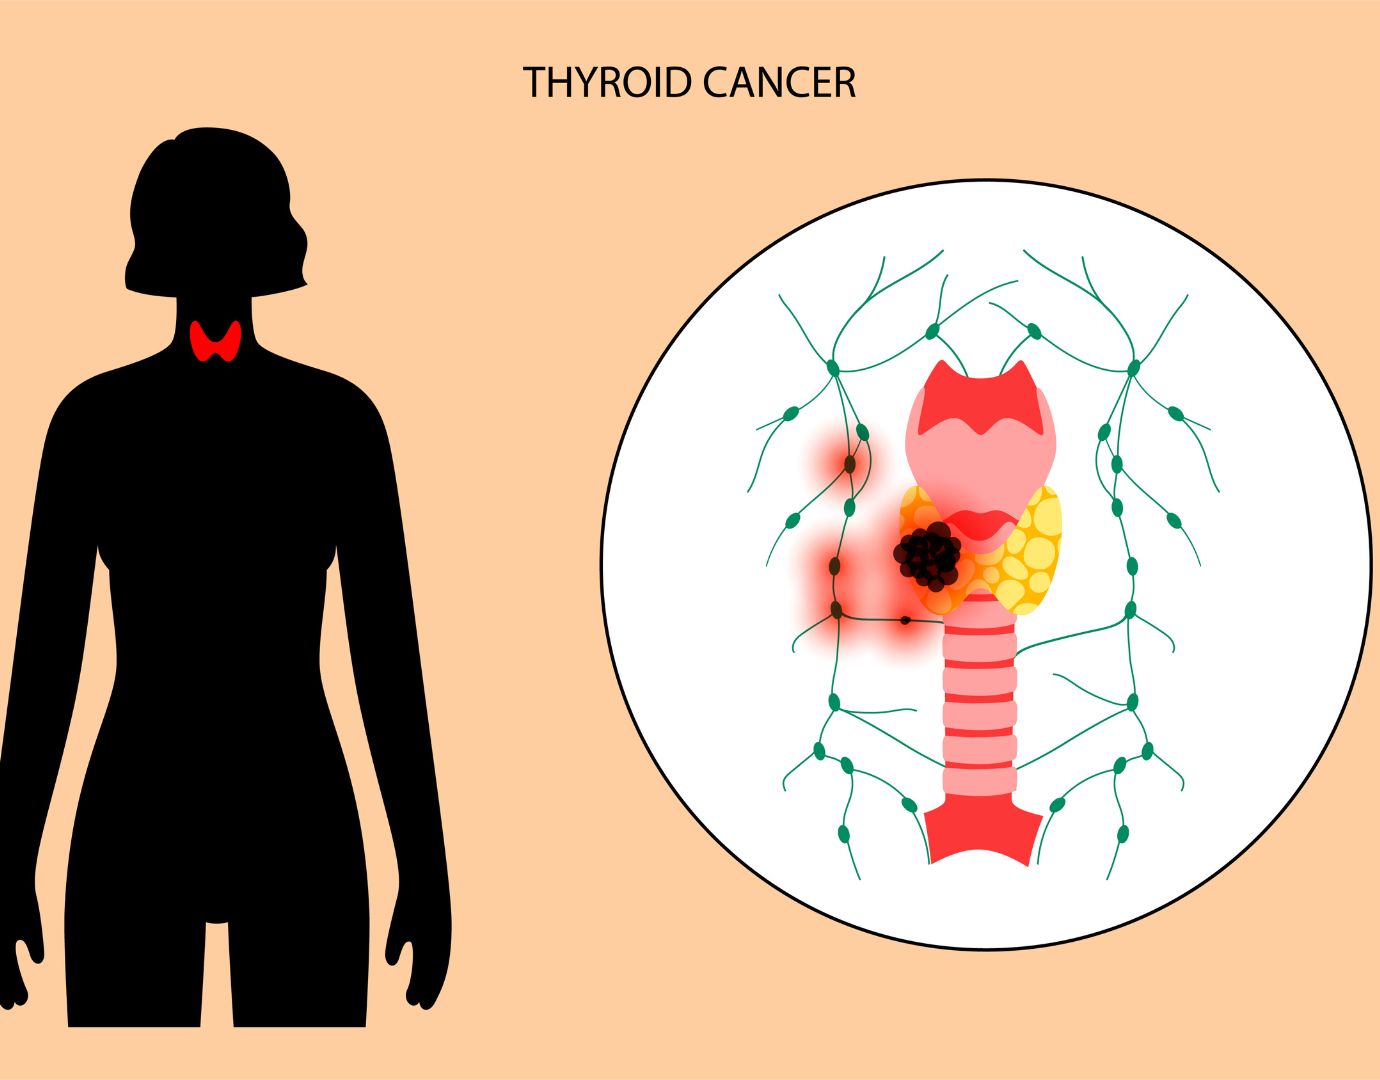 Δευτερογενείς συμπαγείς όγκοι: Συνηθισμένοι μεταξύ όσων εμφάνισαν καρκίνο του θυρεοειδούς μετά το Τσερνομπίλ!